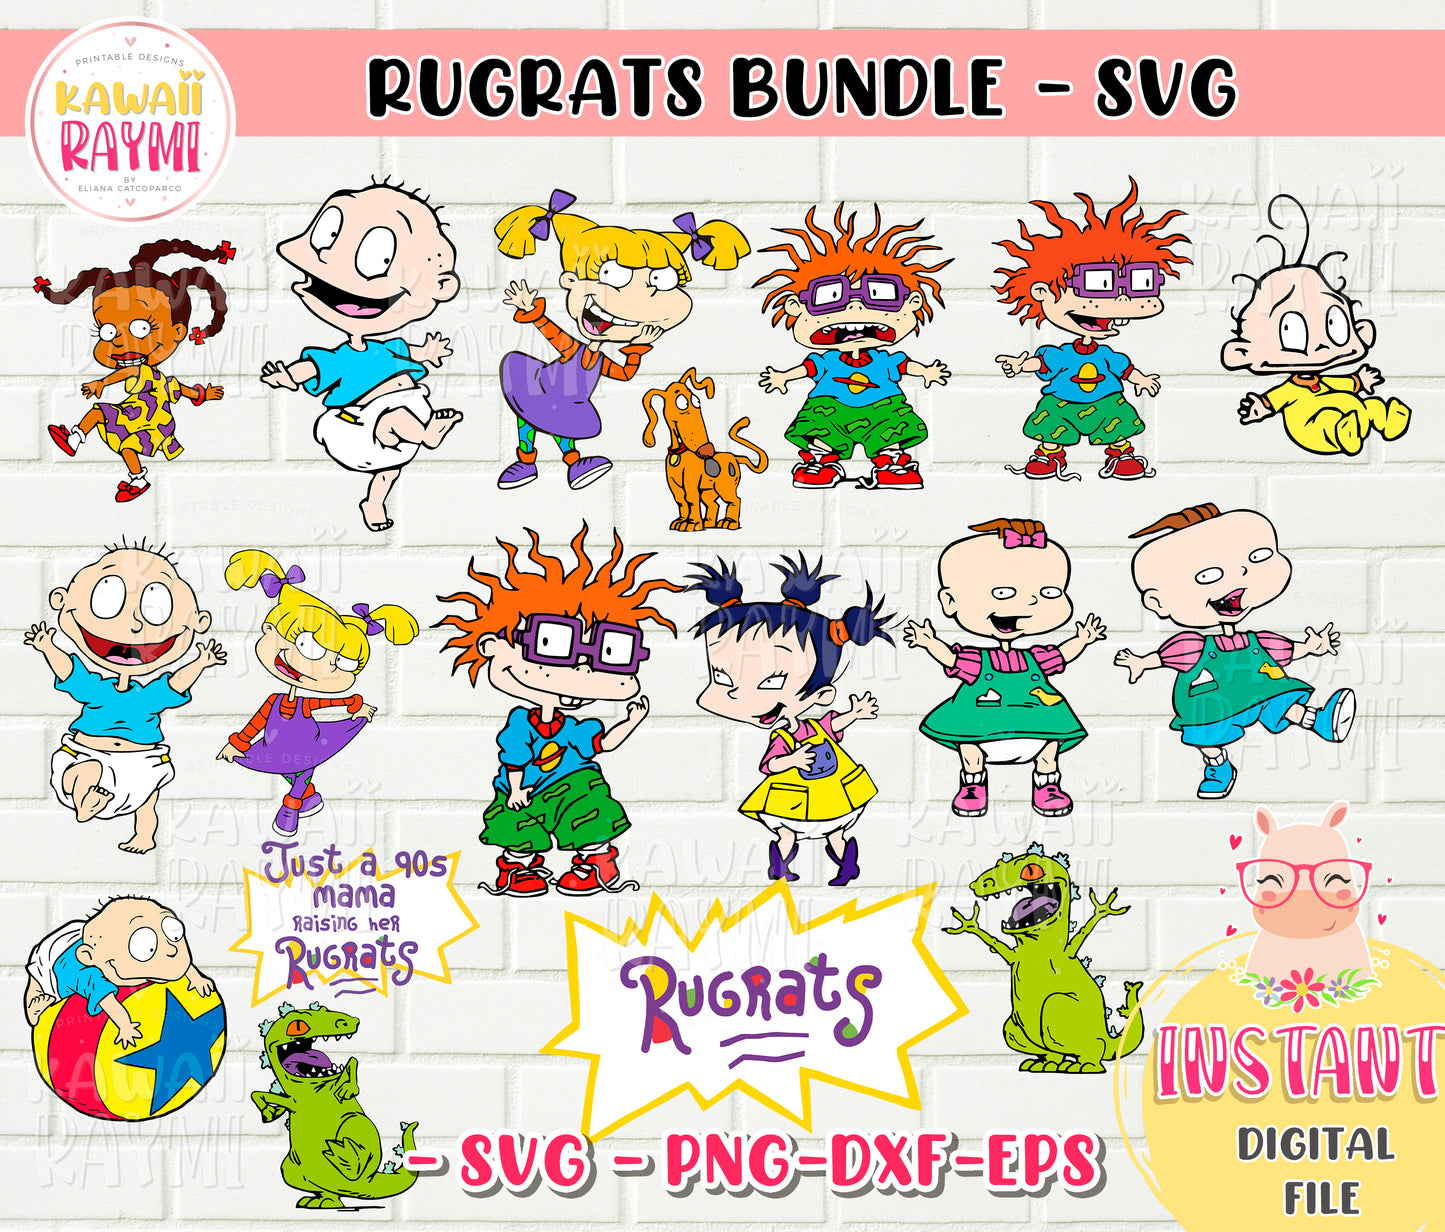 Rugrats bundle SVG- Rugrats clipart, just a 90s mama raising her rugrats, cricut svg, PNG-SVG